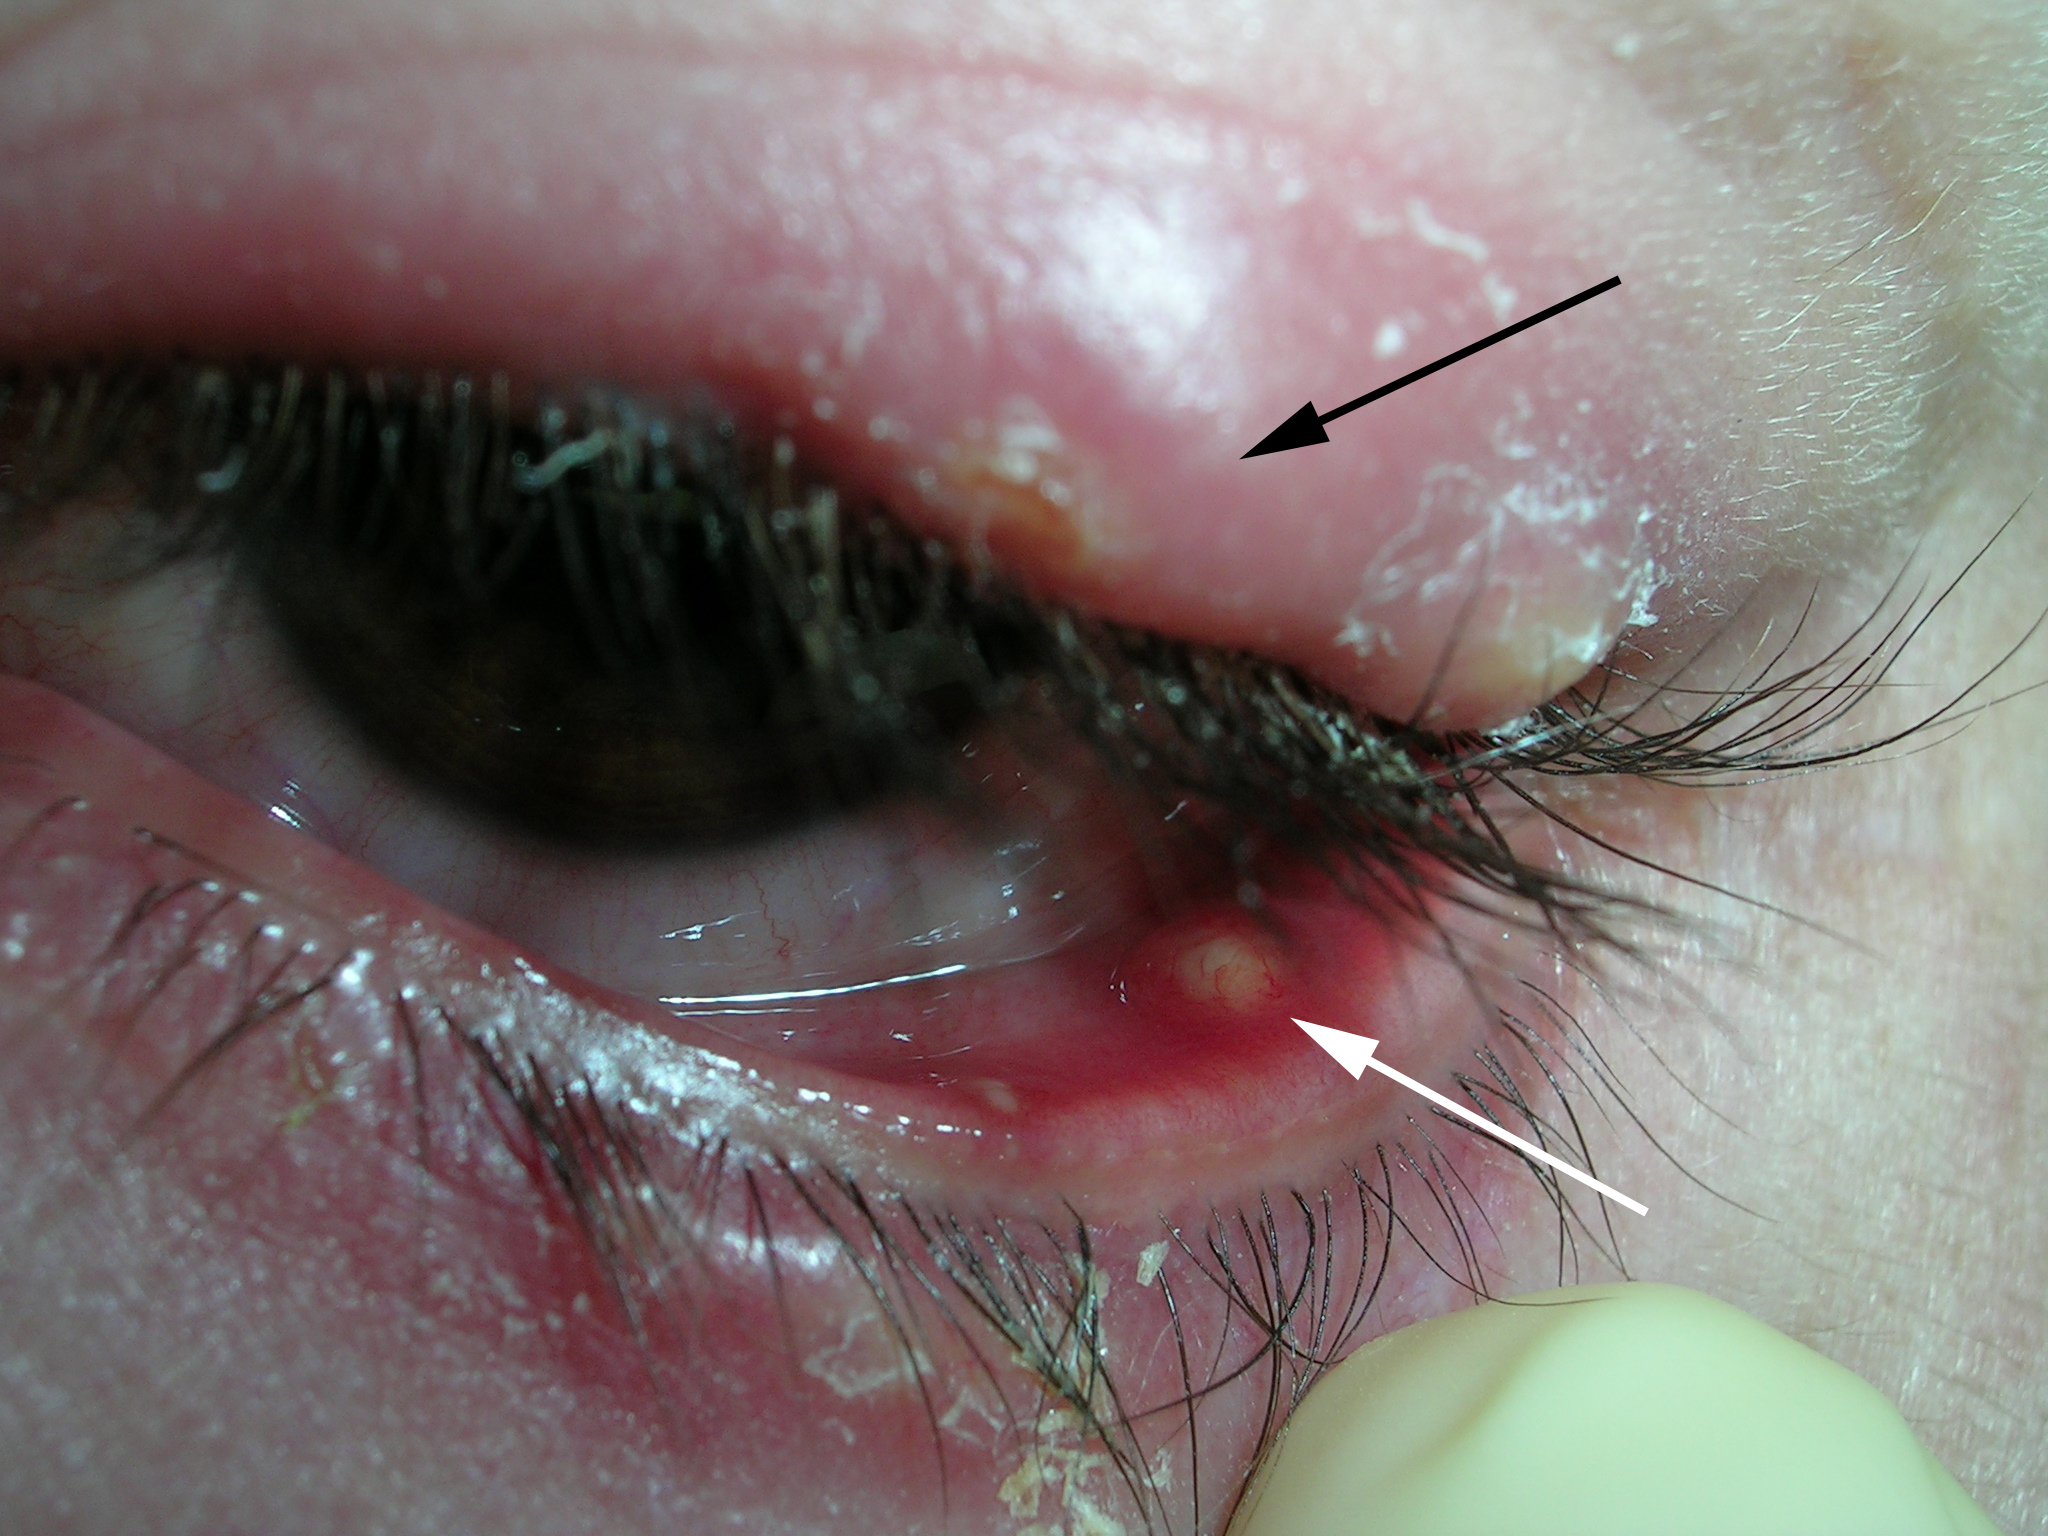 lower eyelid edema